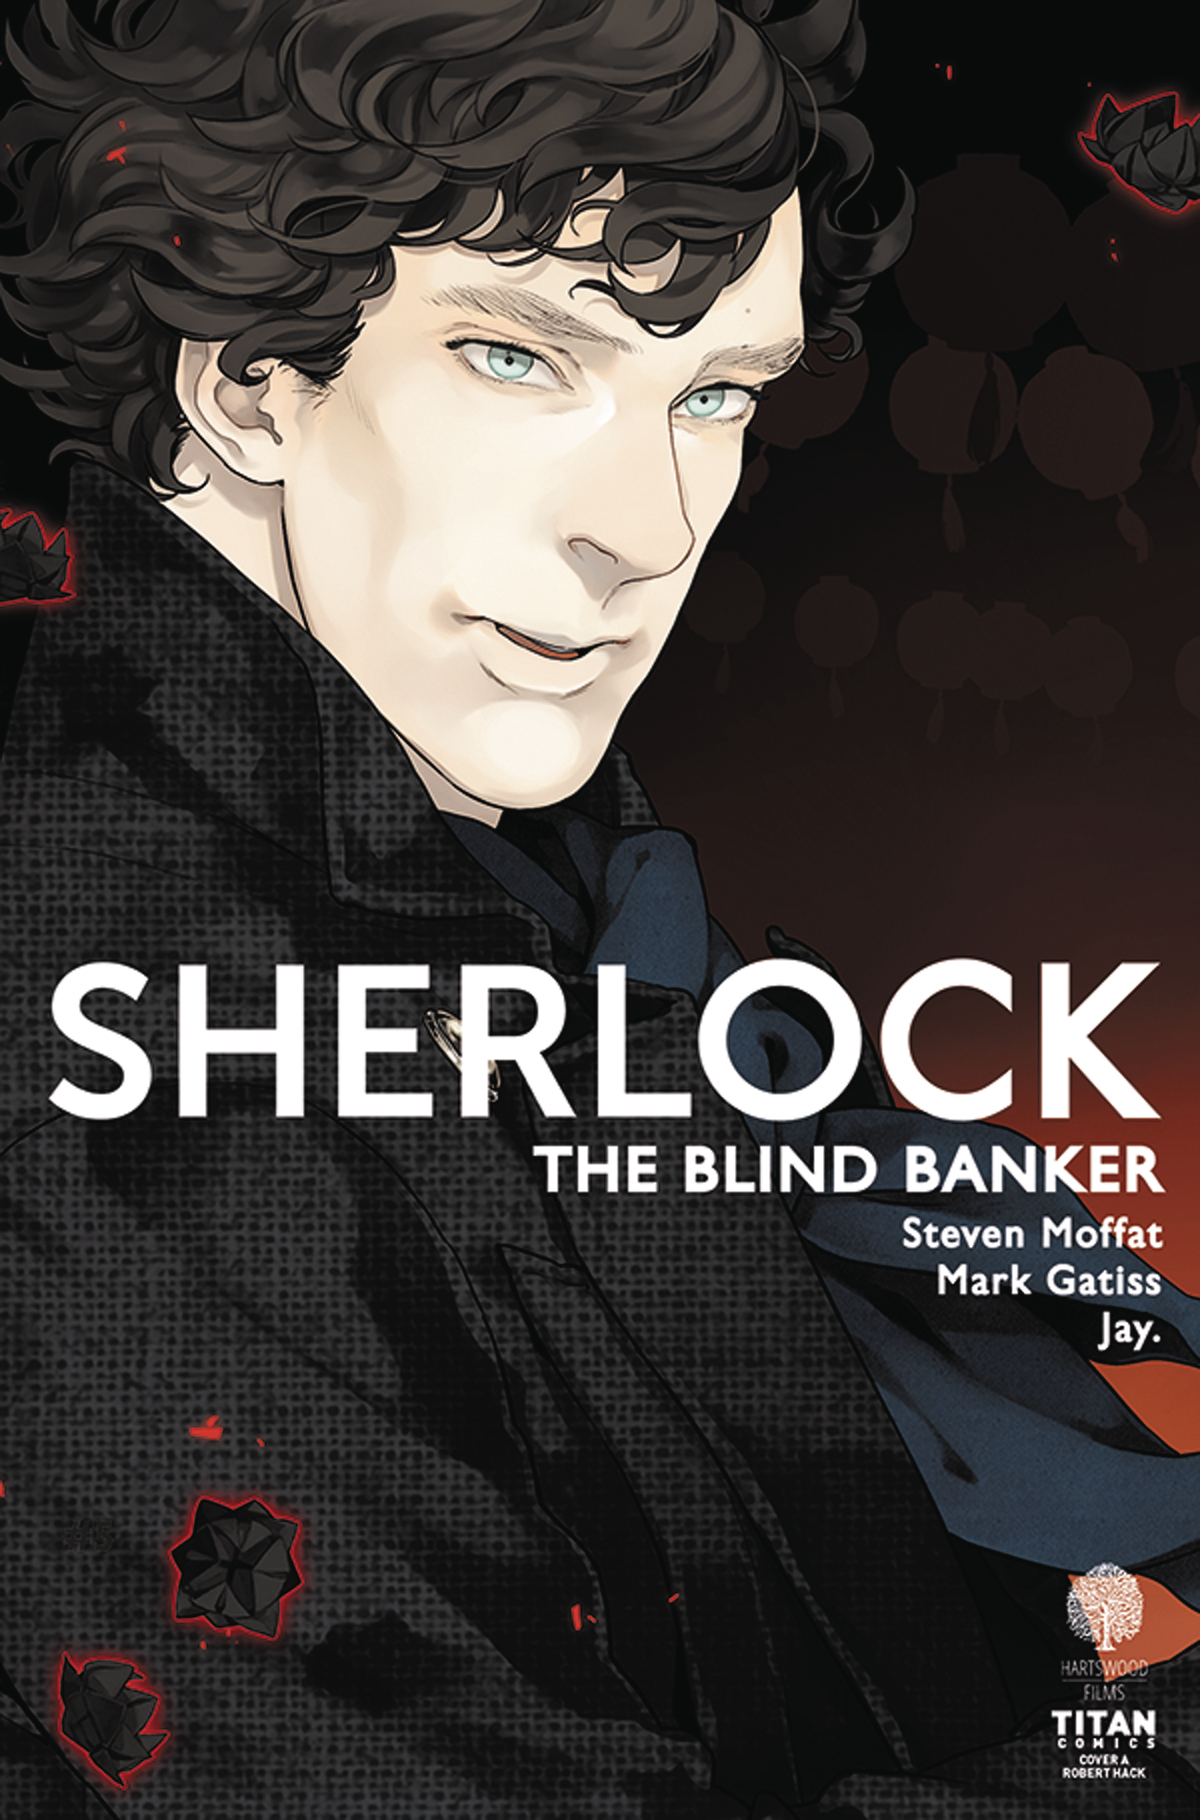 SHERLOCK BLIND BANKER #1 (OF 6) CVR A JAY